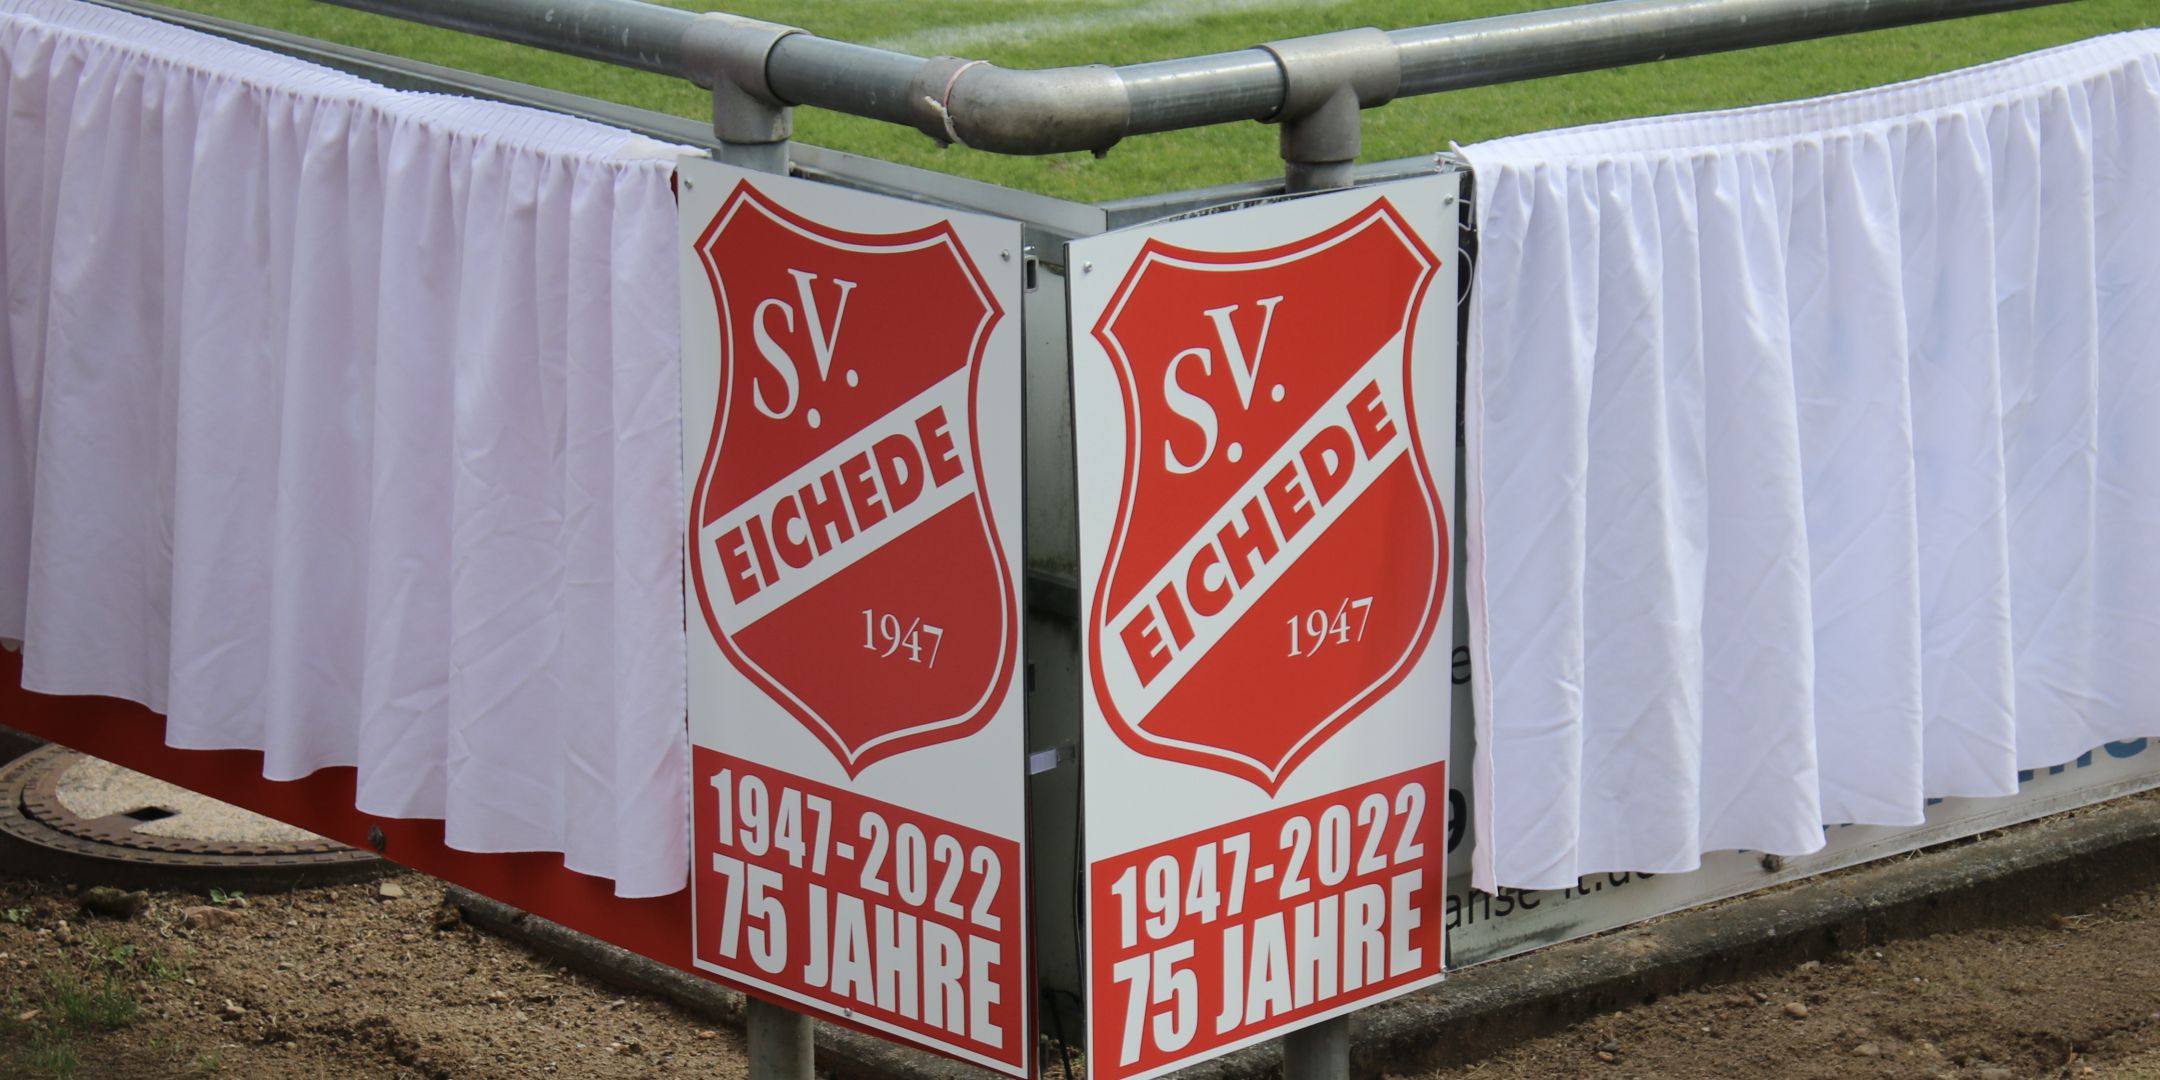 75 Jahre SV Eichede - Letztes Festwochenende mit Landesligaauftakt, großer Feier und Handicap-Turnier